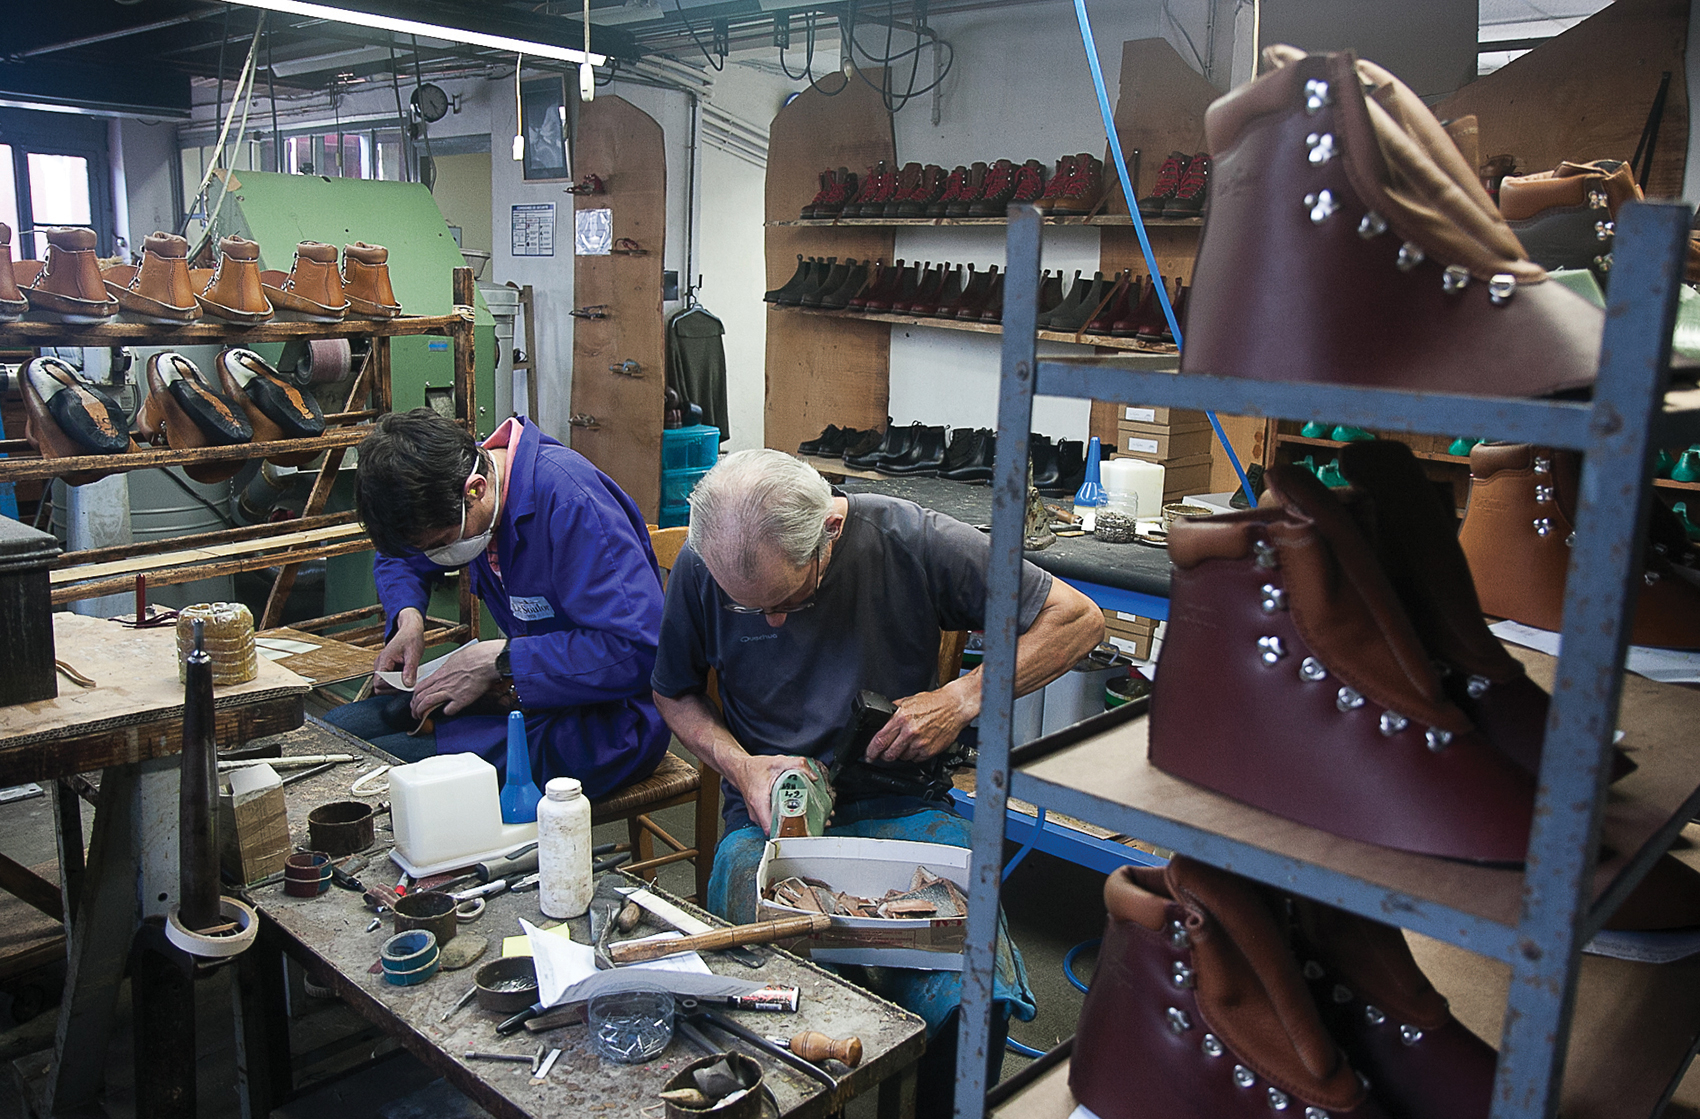 Dominique et Robert sont monteurs à l'atelier de chaussures Le Soulor 1925, à Pontacq (Pyrénées-Atlantiques), juillet 2018. © Aurore Chaillou/Revue Projet